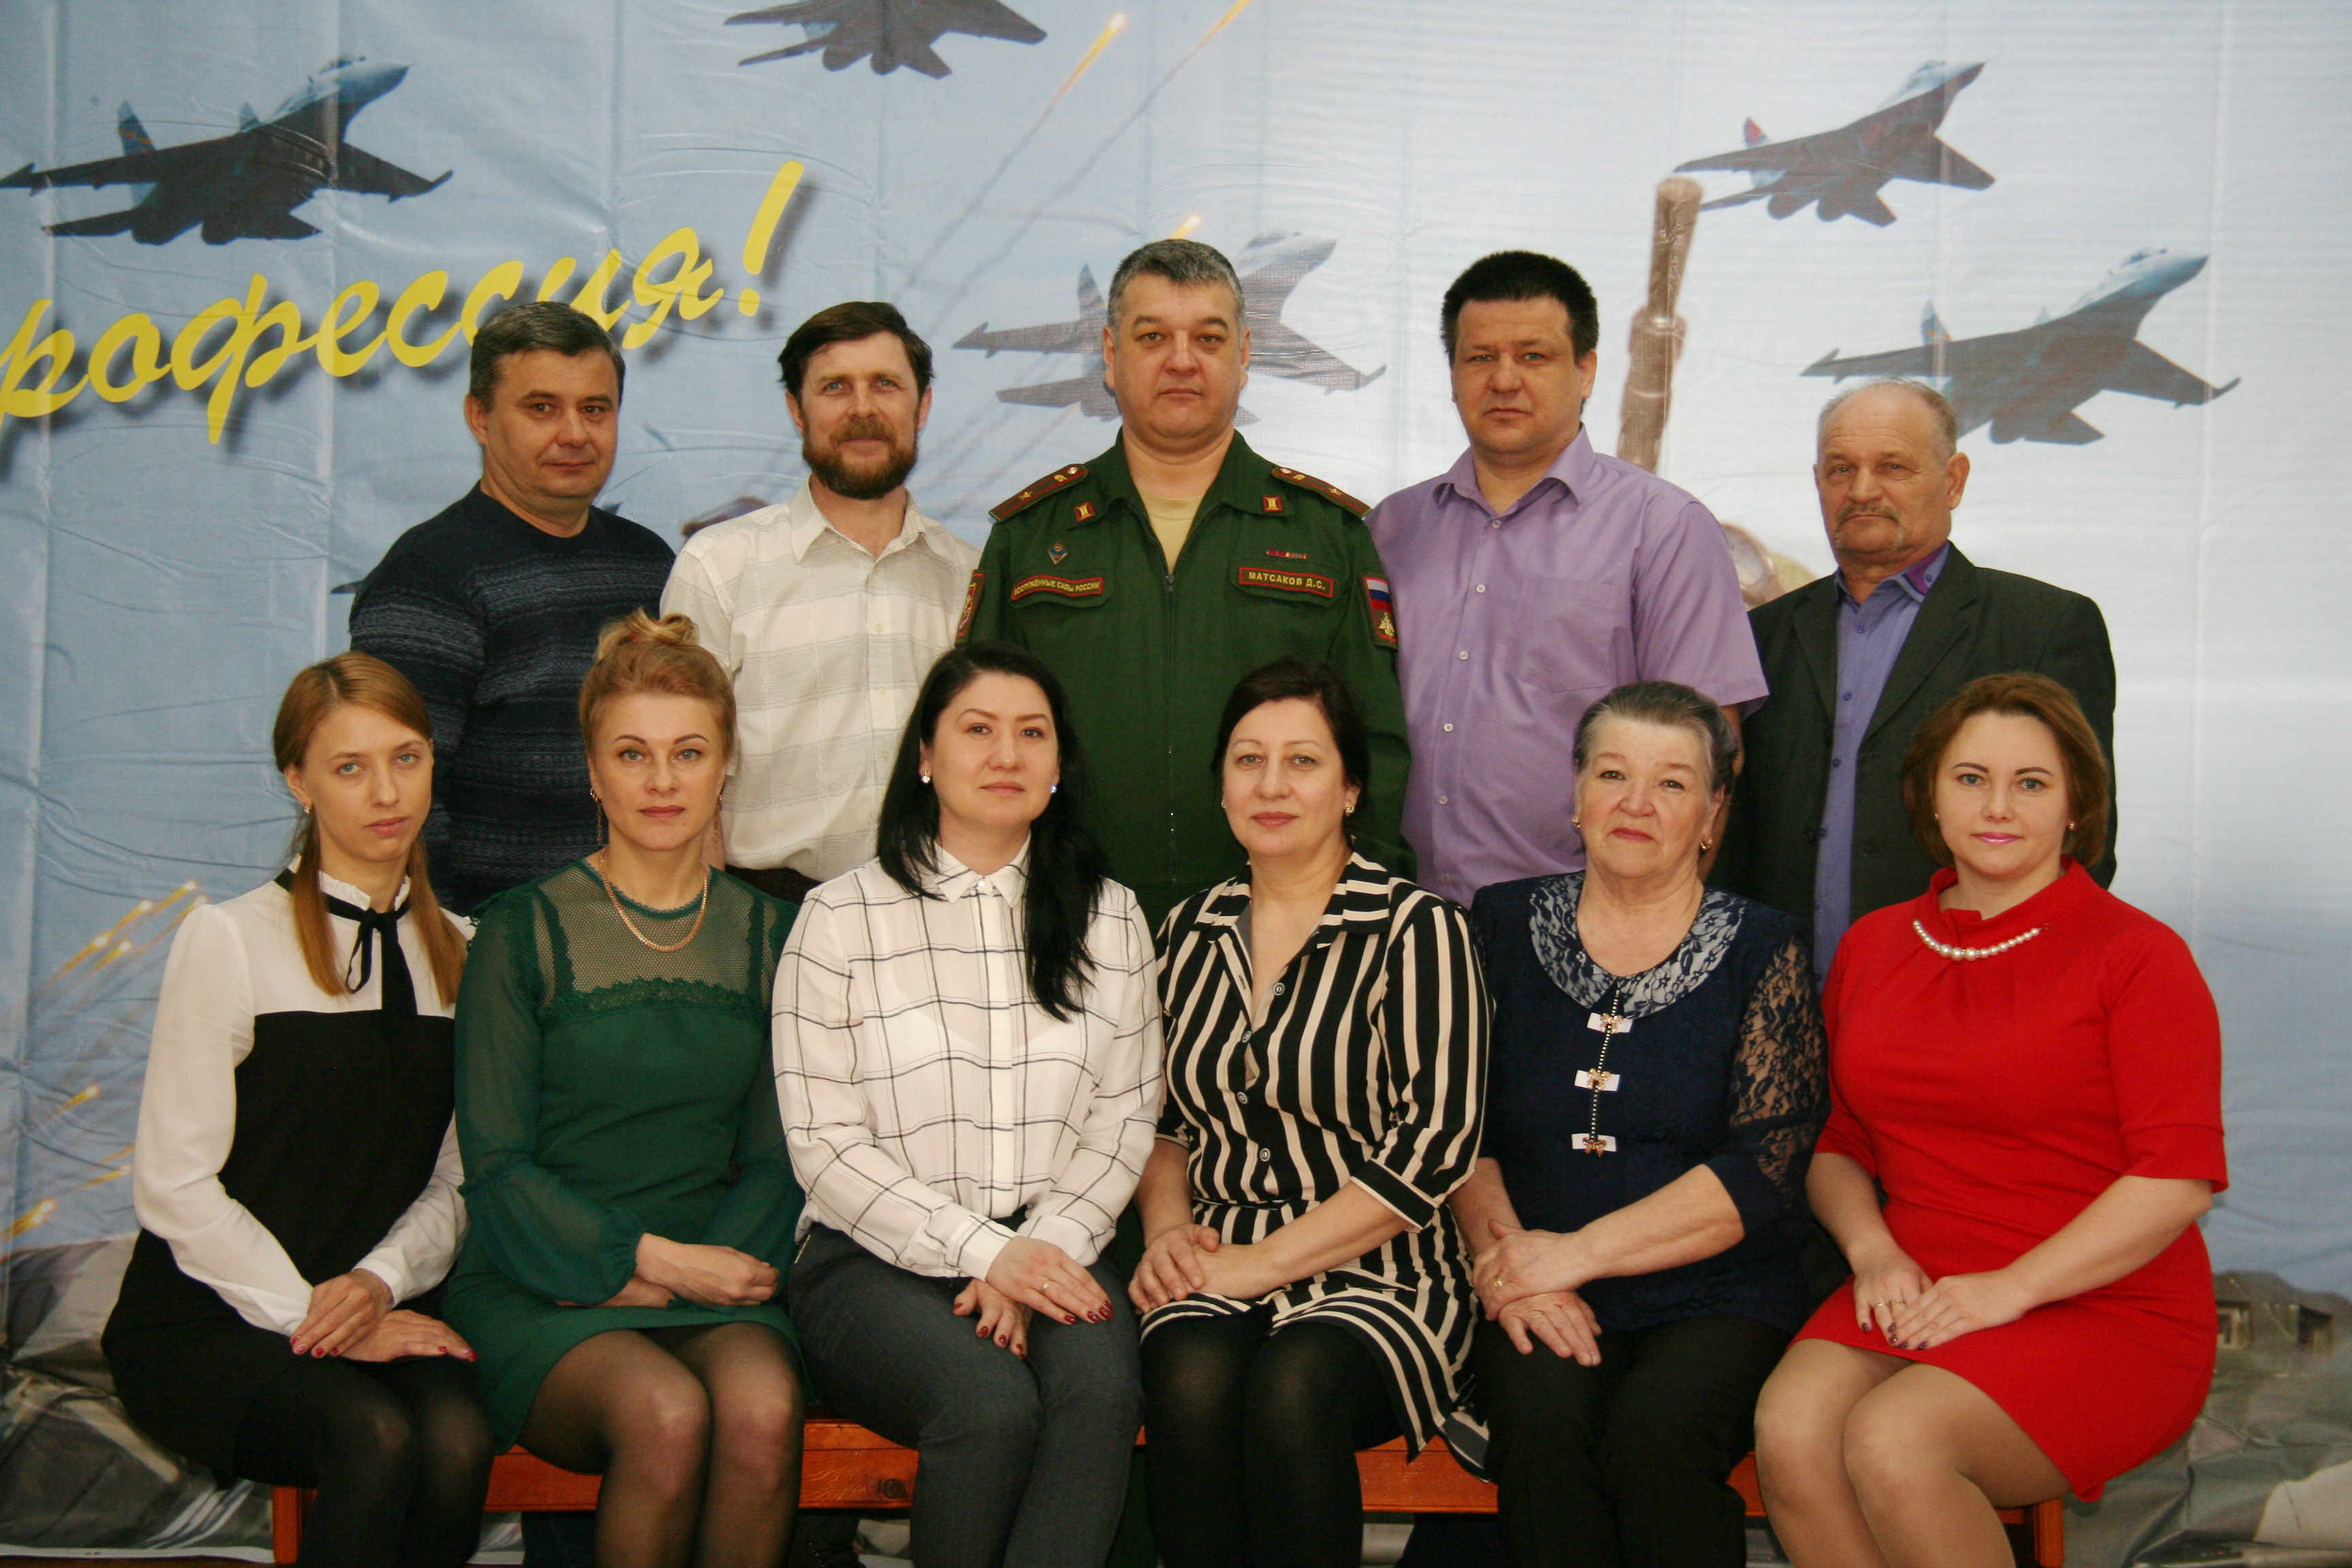 Сахалинский военный комиссариат